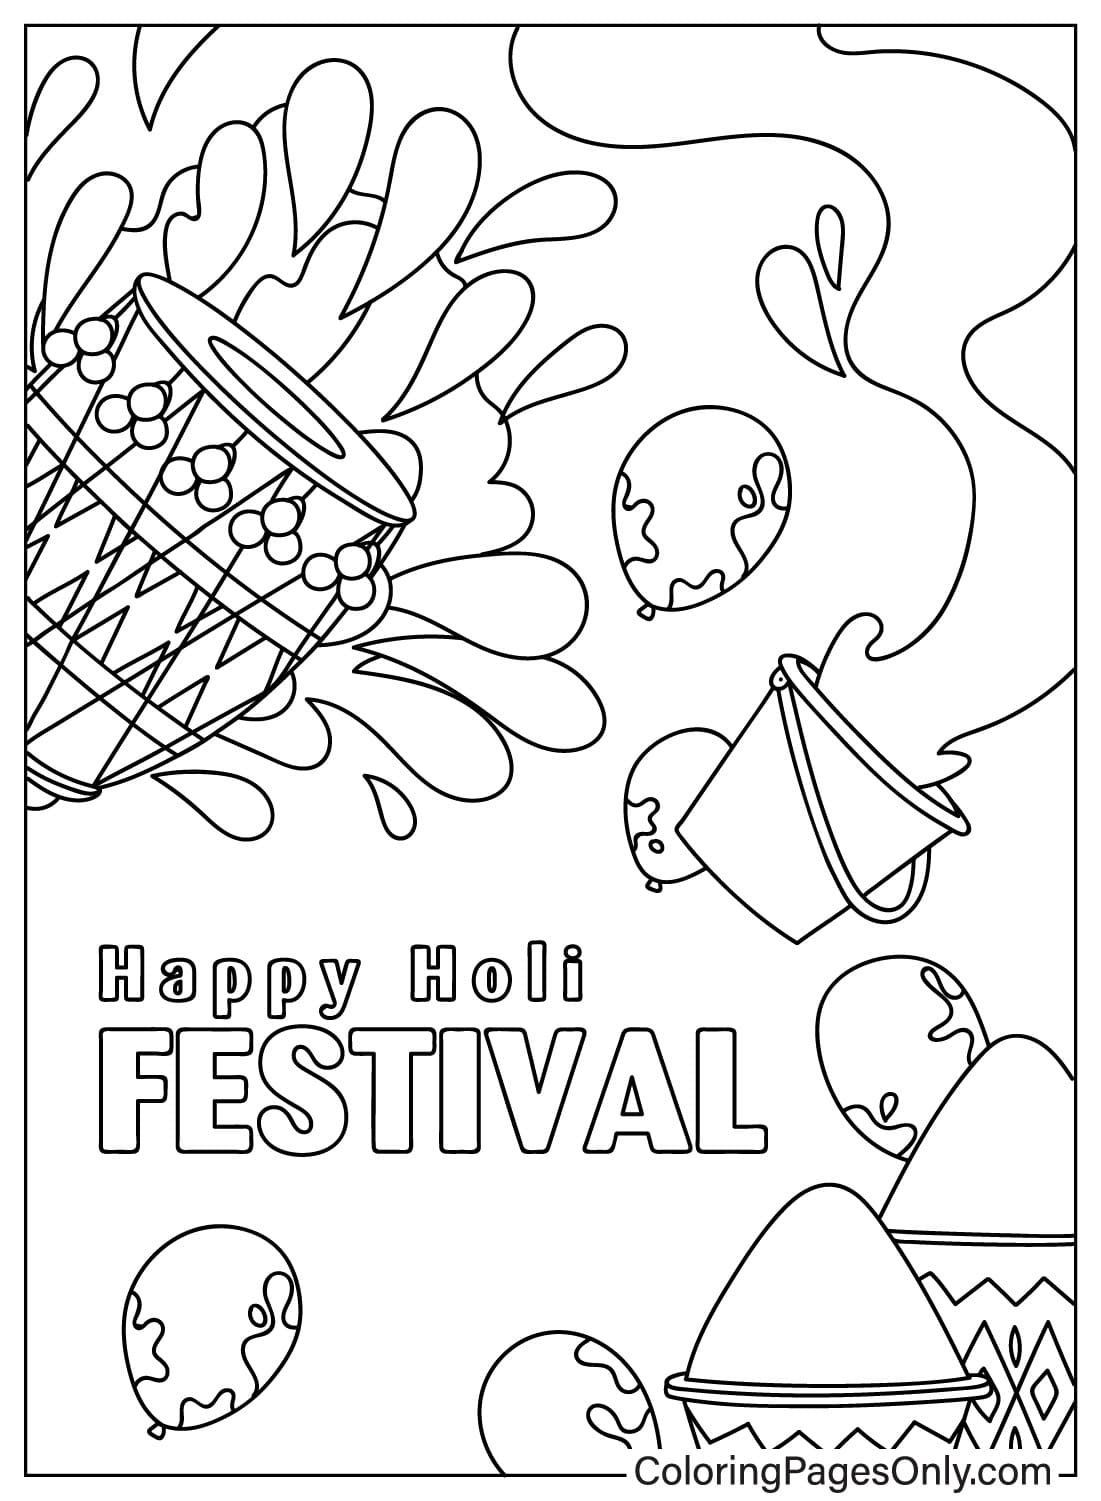 Página colorida do Happy Holi Festival de Holi